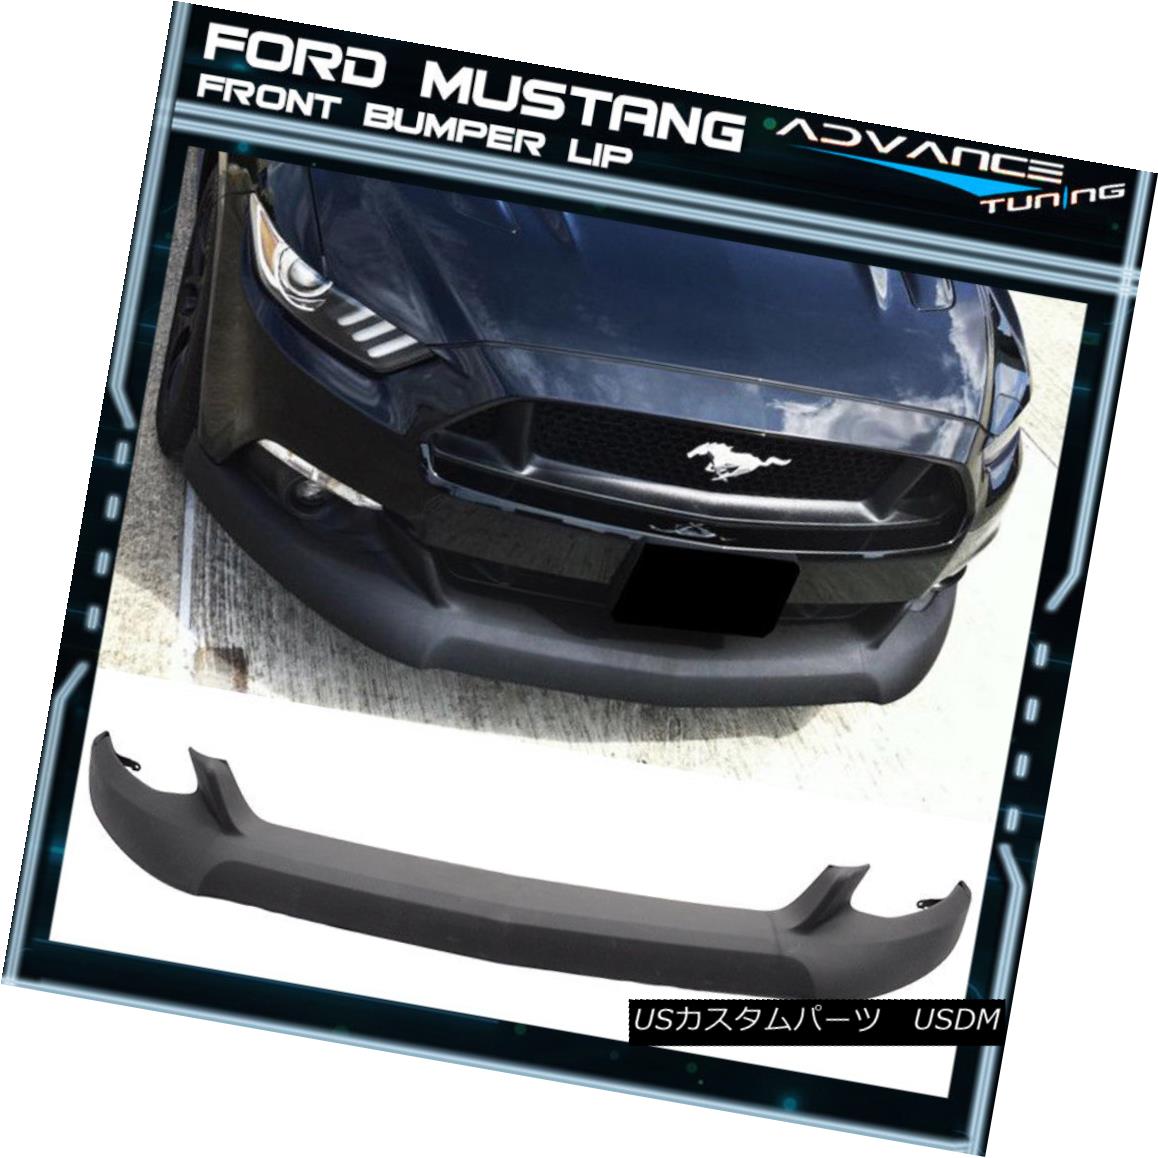 エアロパーツ For 15-17 Ford Mustang Front Bumper Lip Unpainted Black - PU Poly Urethane 15-17フォードマスタングフロントバンパーリップ未塗装ブラック - PUポリウレタン